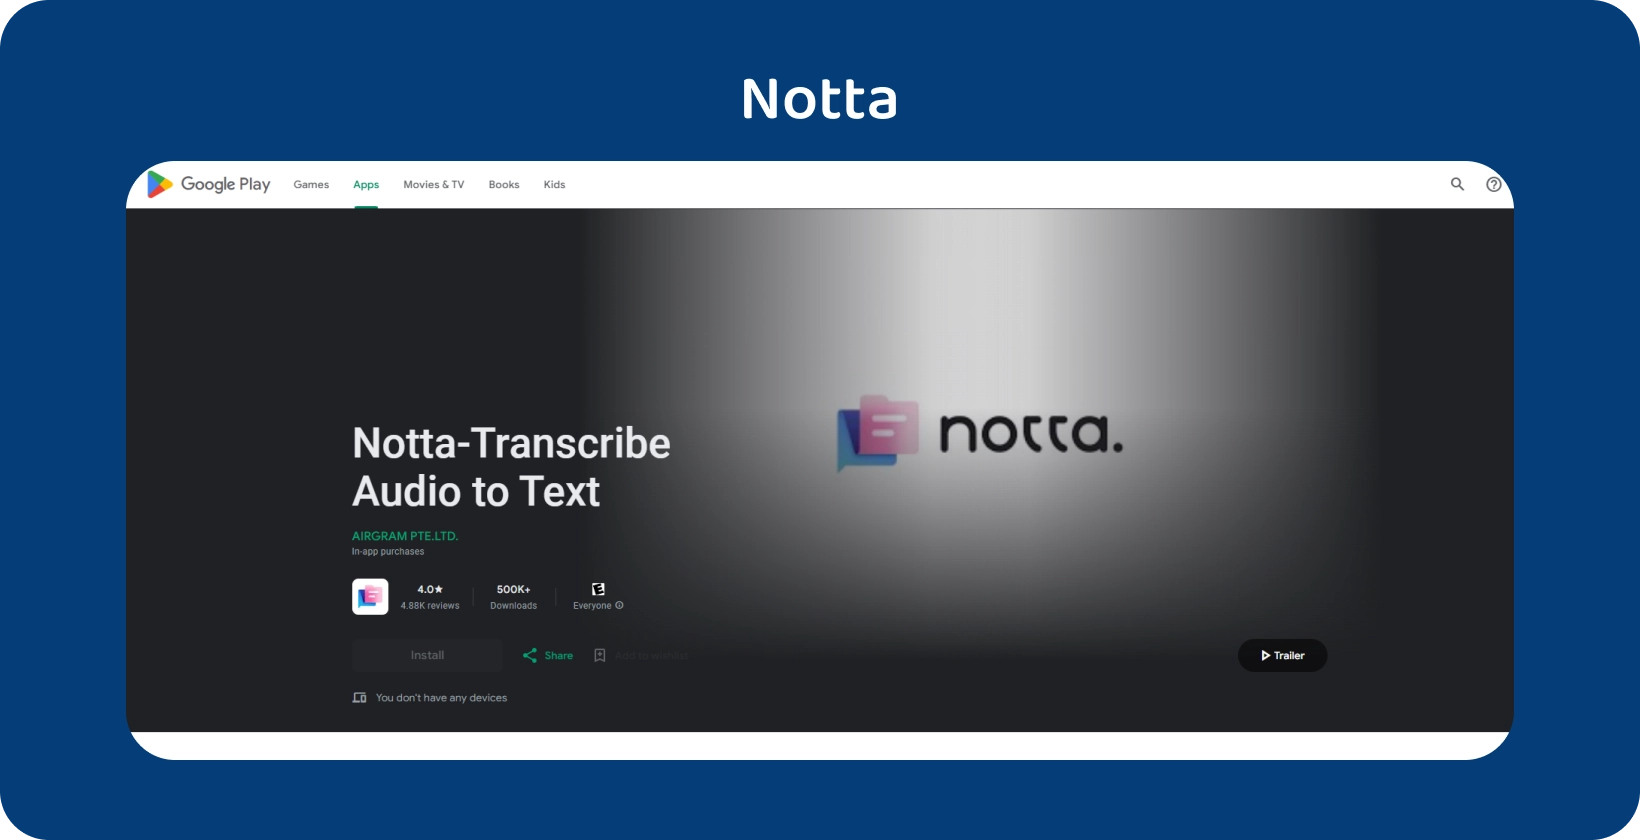 אפליקציית Notta.ai ב- Google Play, המציגה את יכולתה לתמלל אודיו לטקסט במדויק ב- Android.